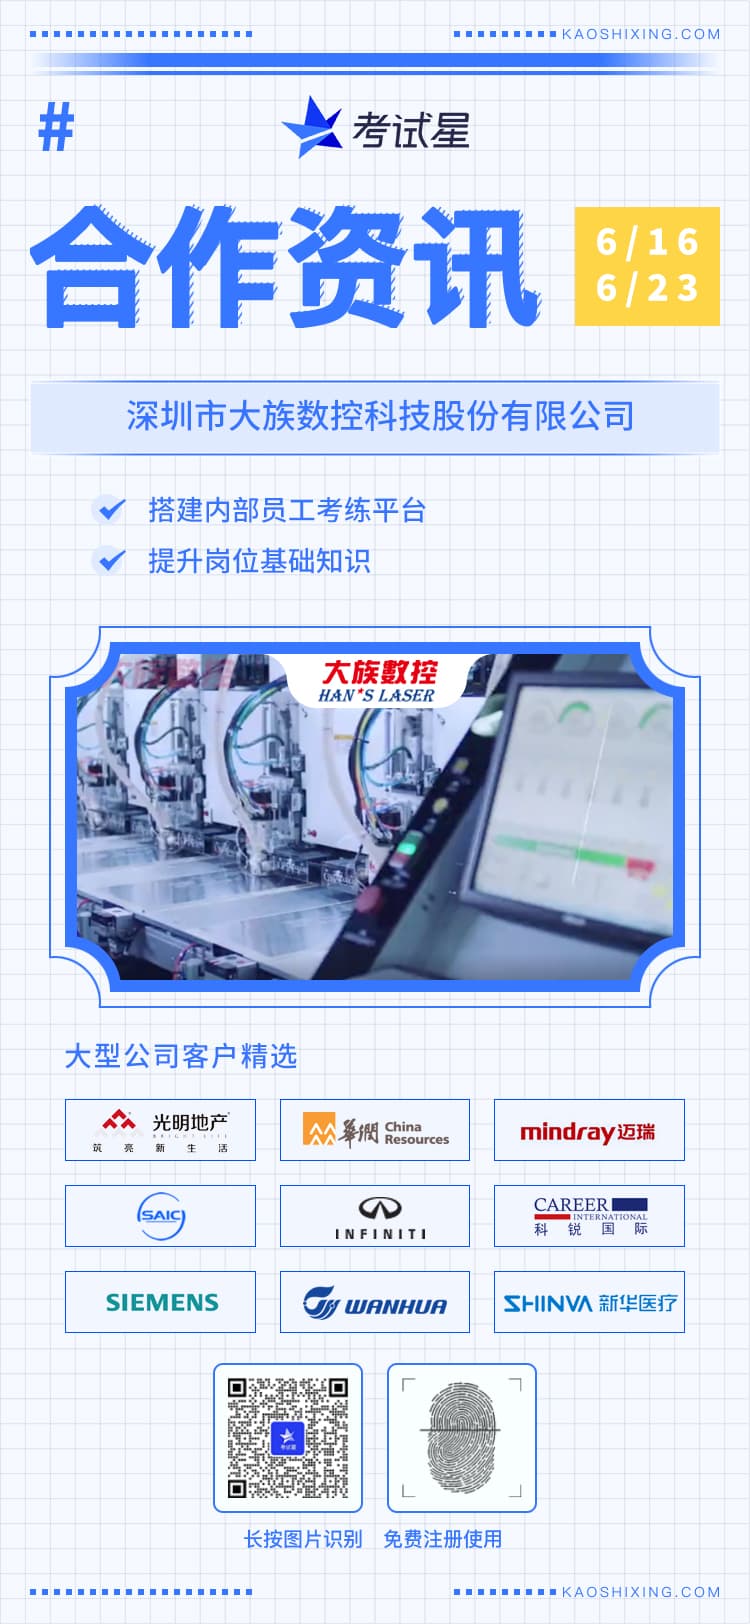 深圳市大族数控科技股份有限公司-考试星员工考练平台